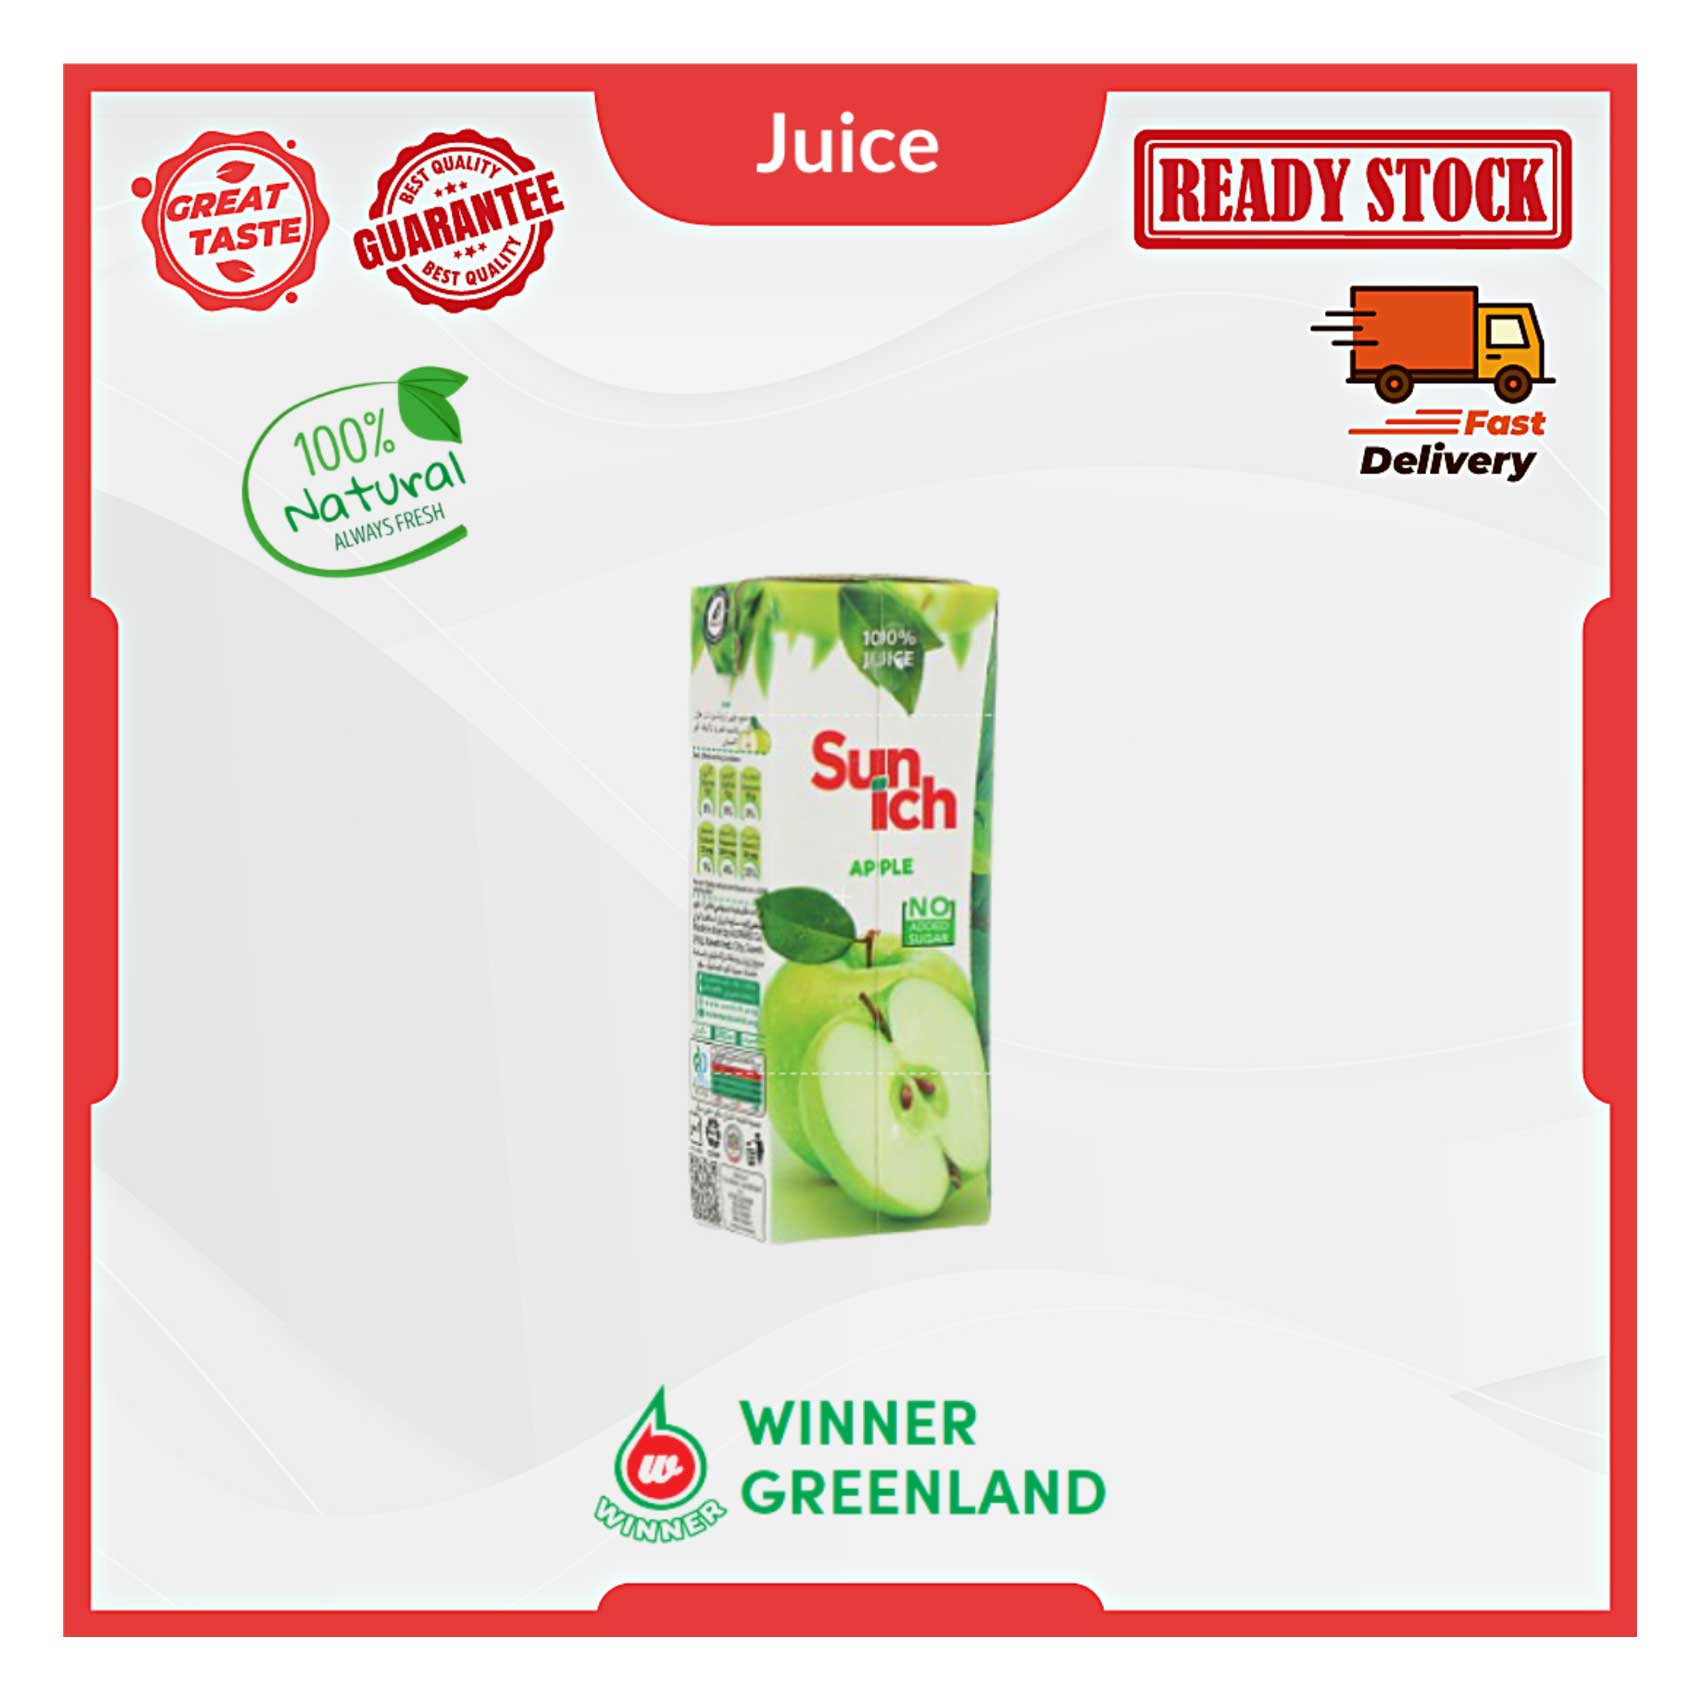 Fruit Dale Apple Juice 250Ml